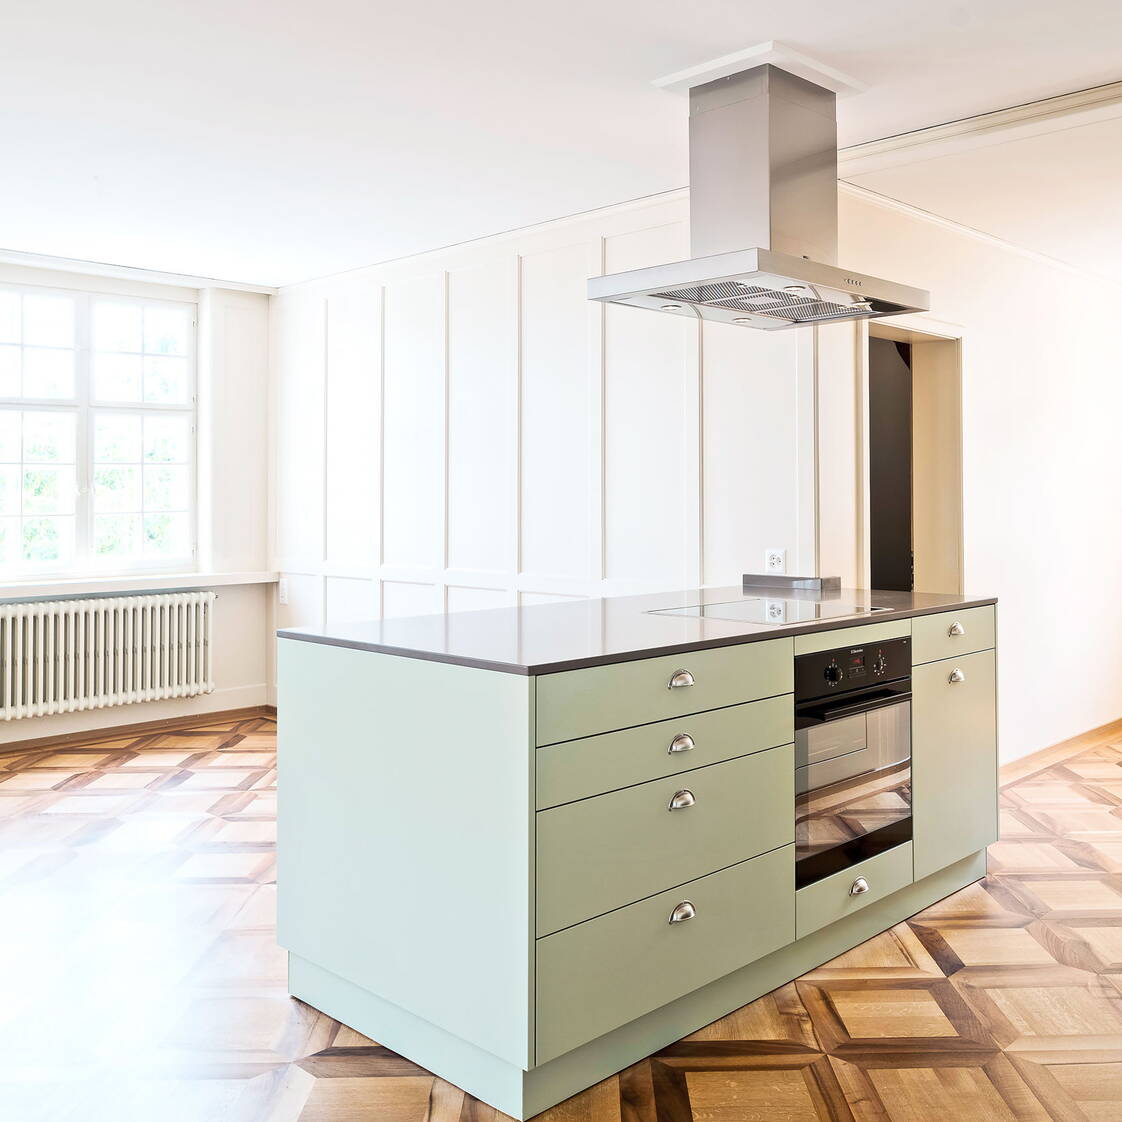 Moderne, offene Küche in einem ehemaligen Altbauwohnzimmer mit schönem Holzparkett.